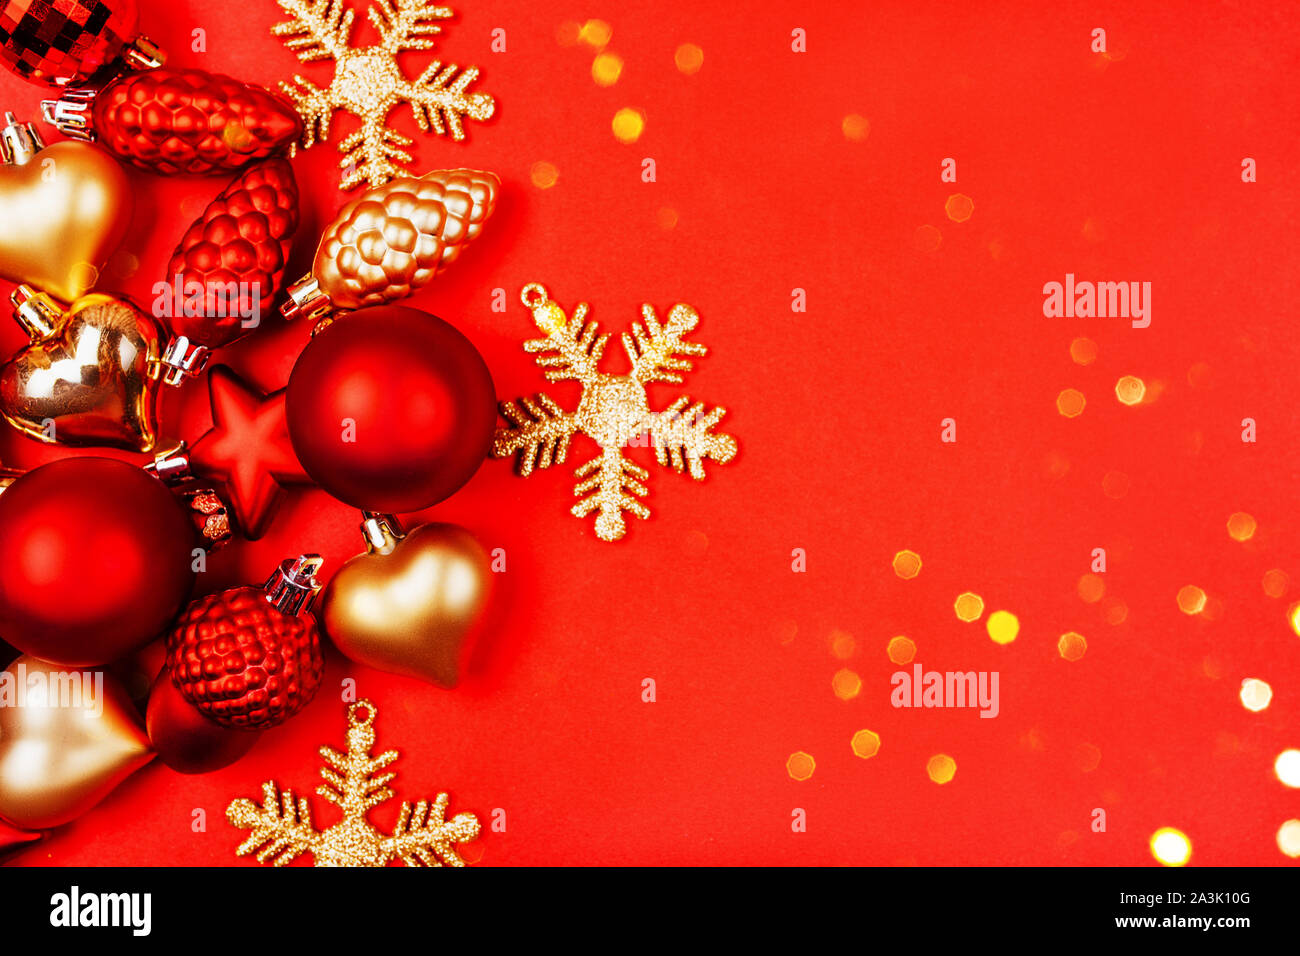 Weihnachtskugel Dekorationen und Symbole auf roten Hintergrund. Traditionelle Glückwunschkarte für die festliche Jahreszeit. Stockfoto